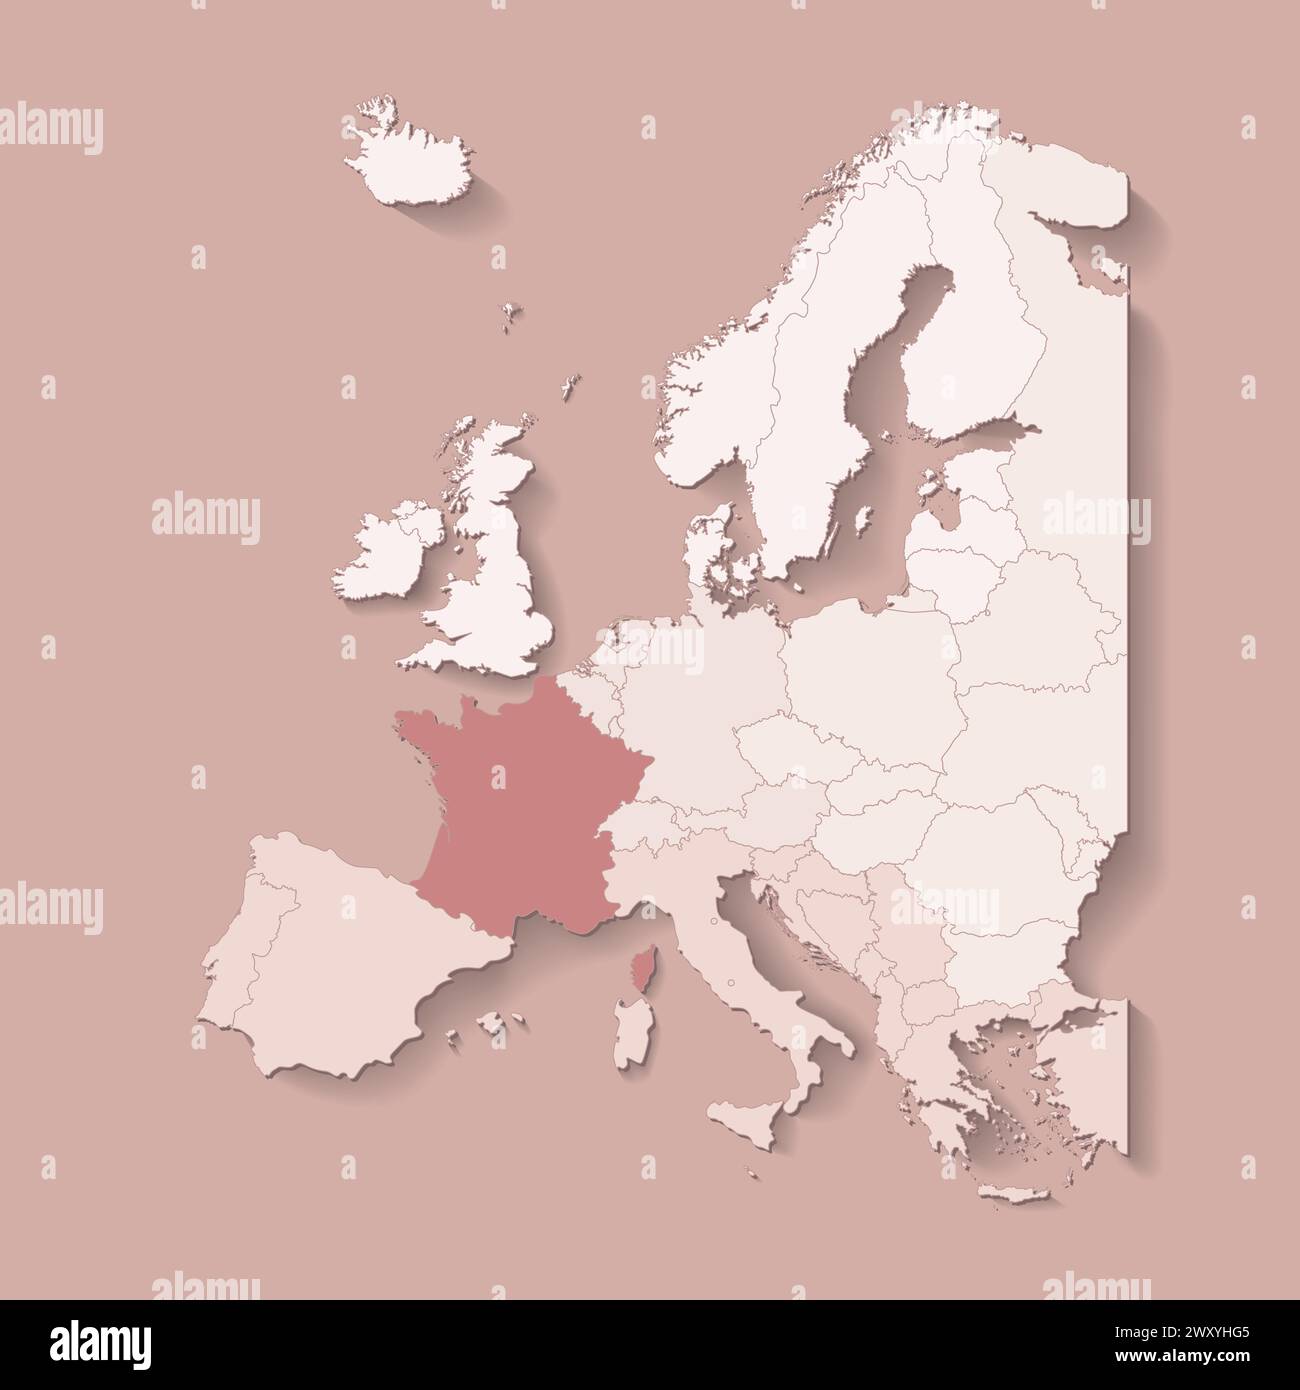 Illustrazione vettoriale con terra europea con confini di stati e paese contrassegnato Francia. Mappa politica in colori marroni con occidentale, sud e così via Illustrazione Vettoriale